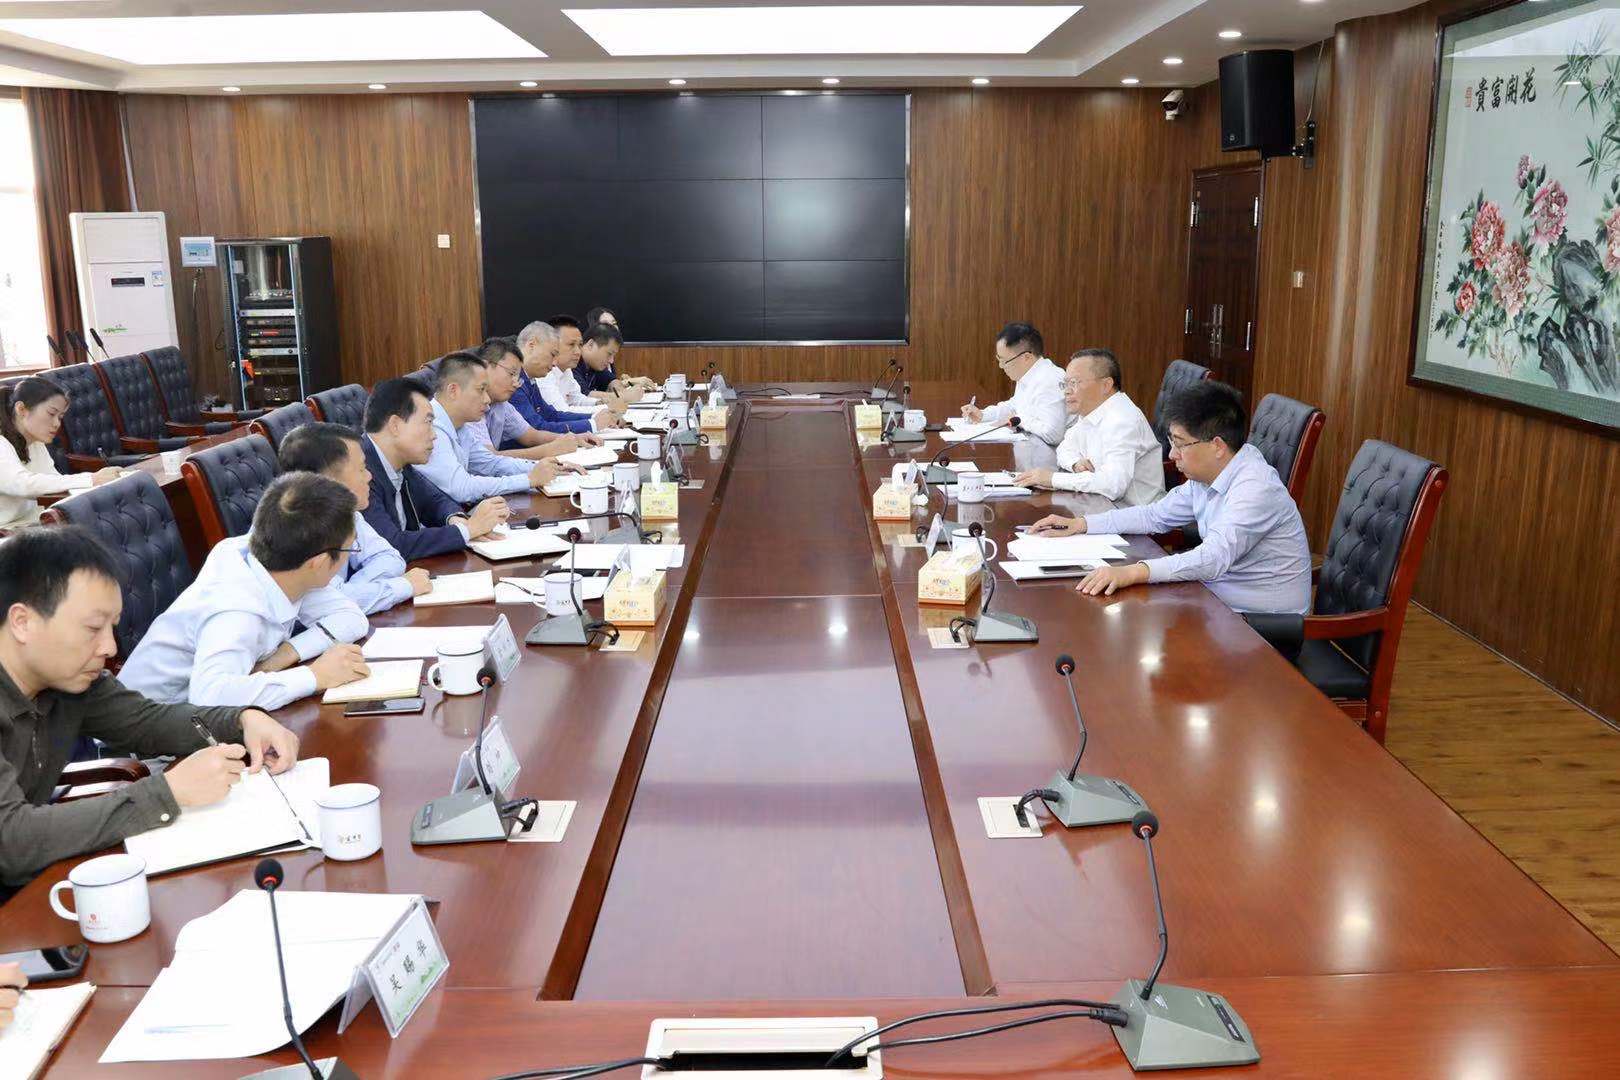 下午，胡忠雄组织金井镇班子成员召开主题教育座谈会。